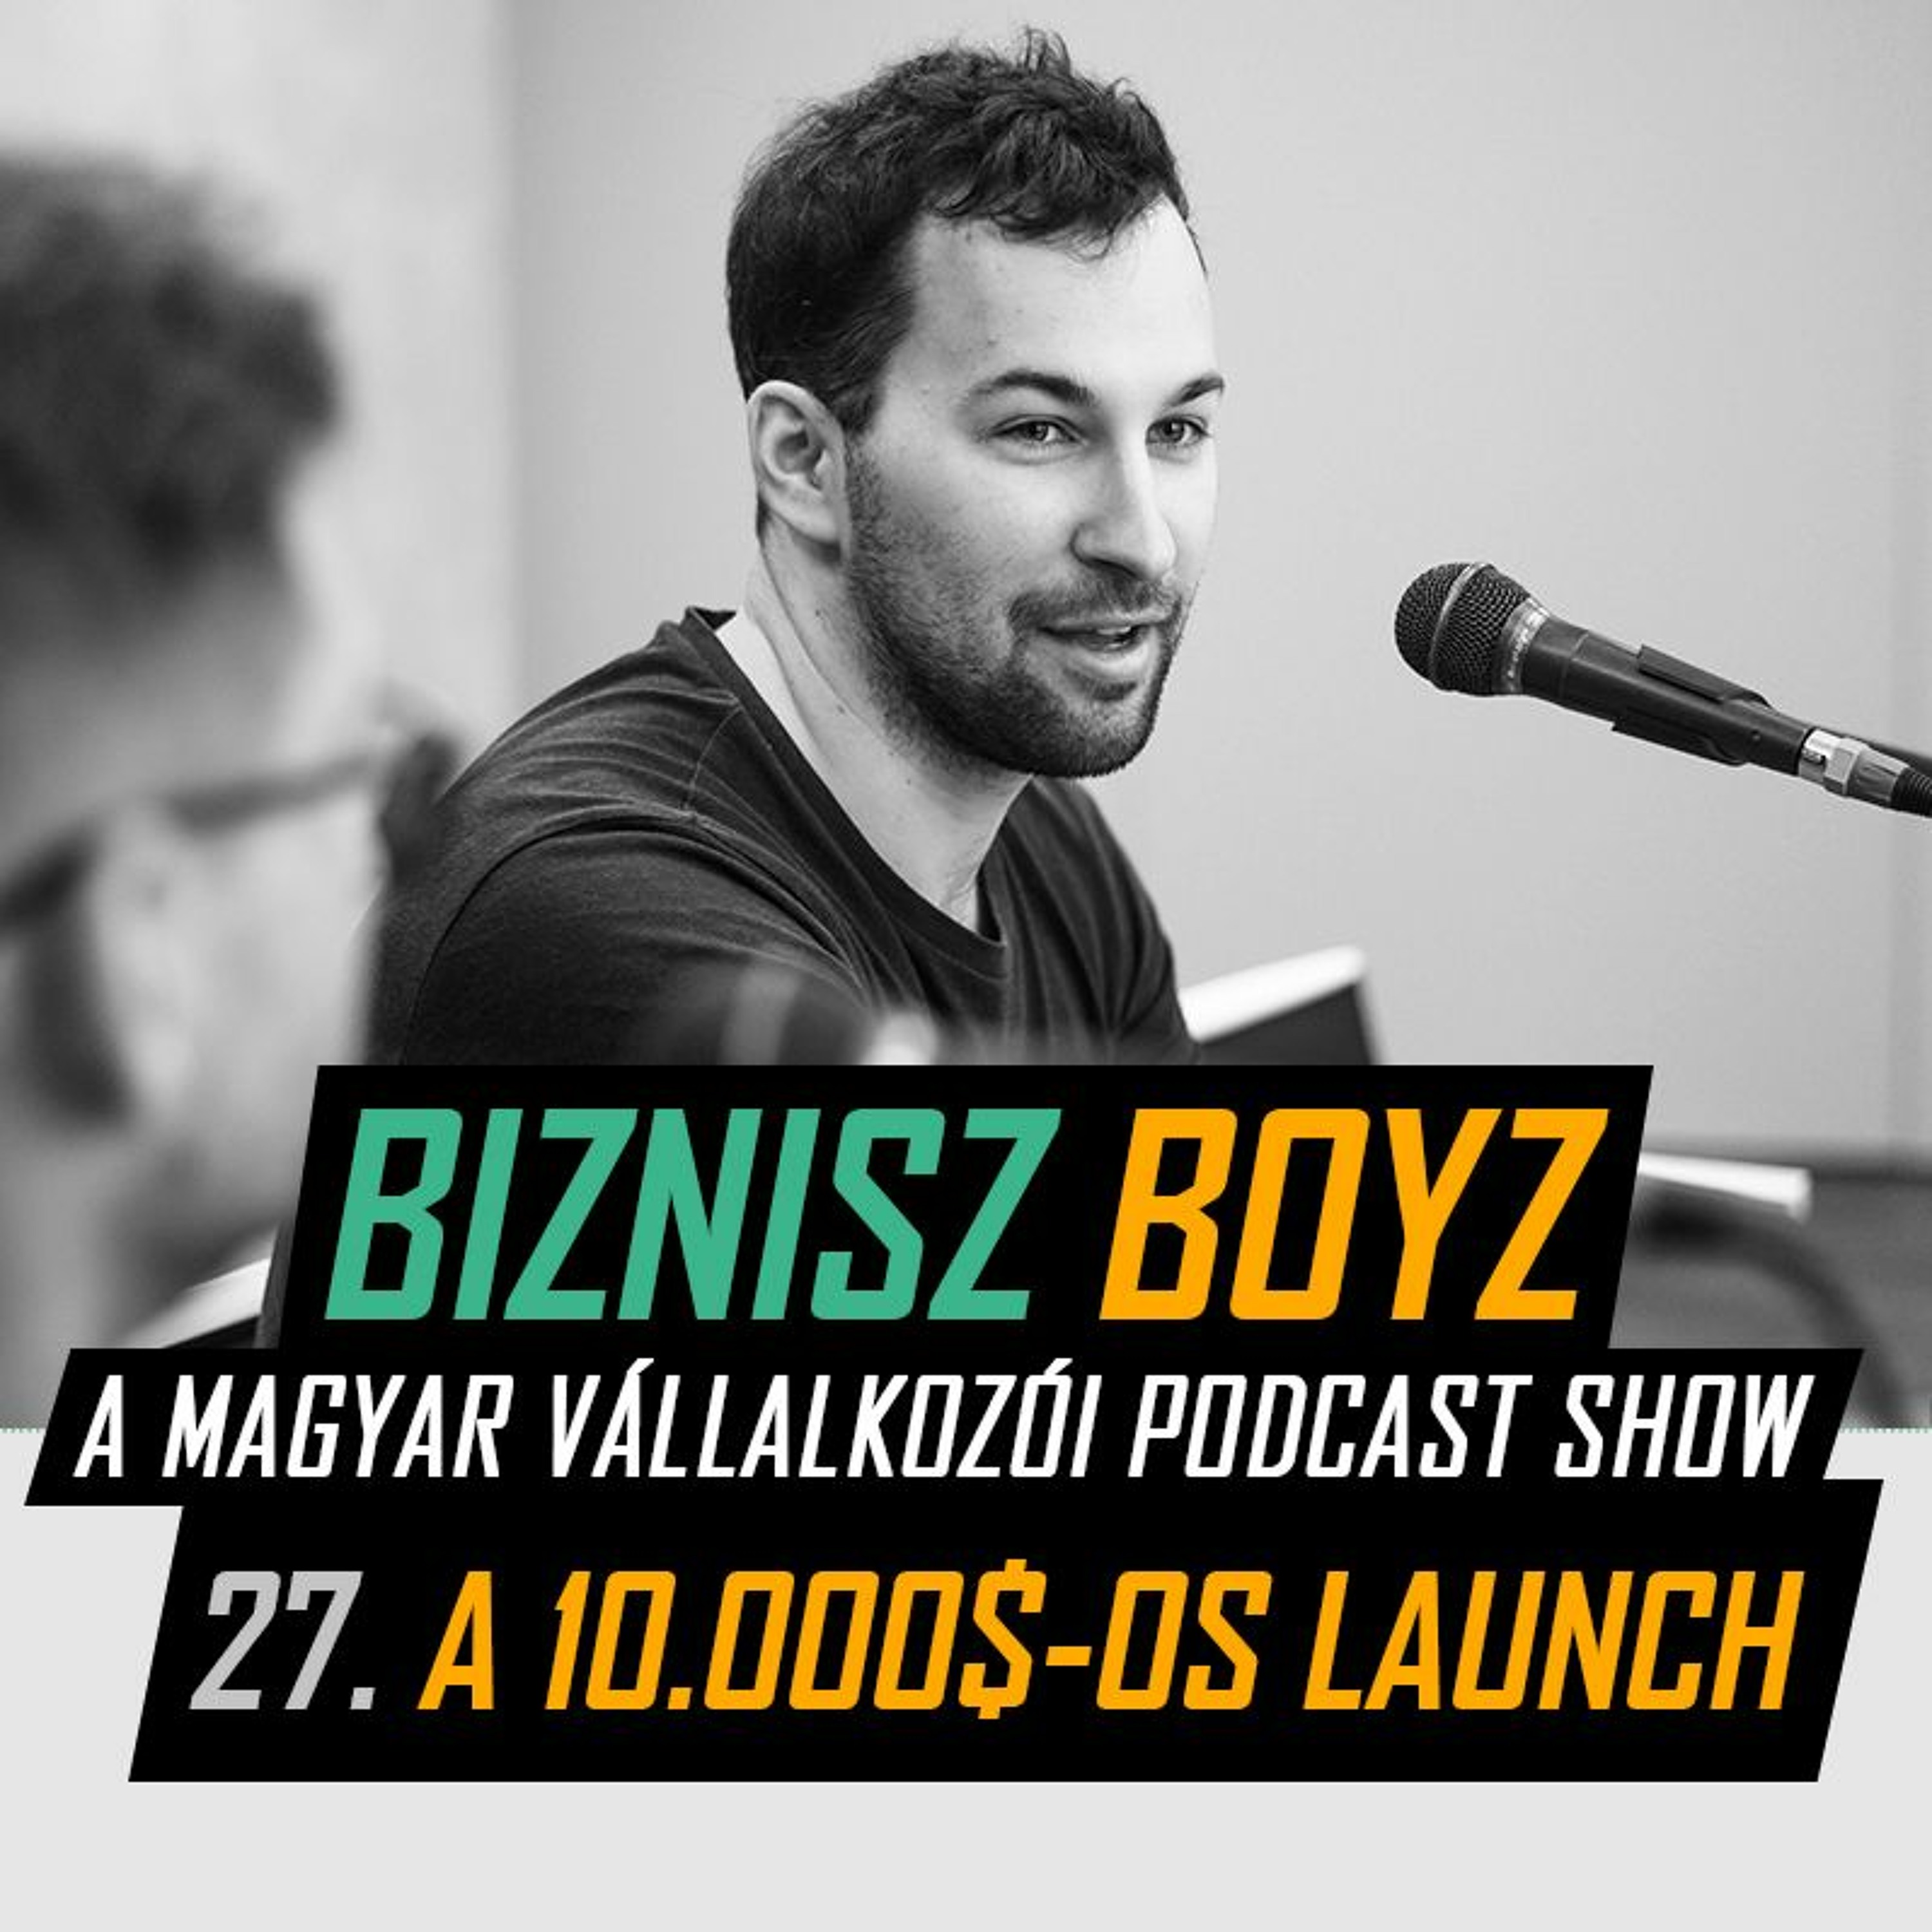 27: A 10.000$-os kurzus launch háttere | Biznisz Boyz Podcast